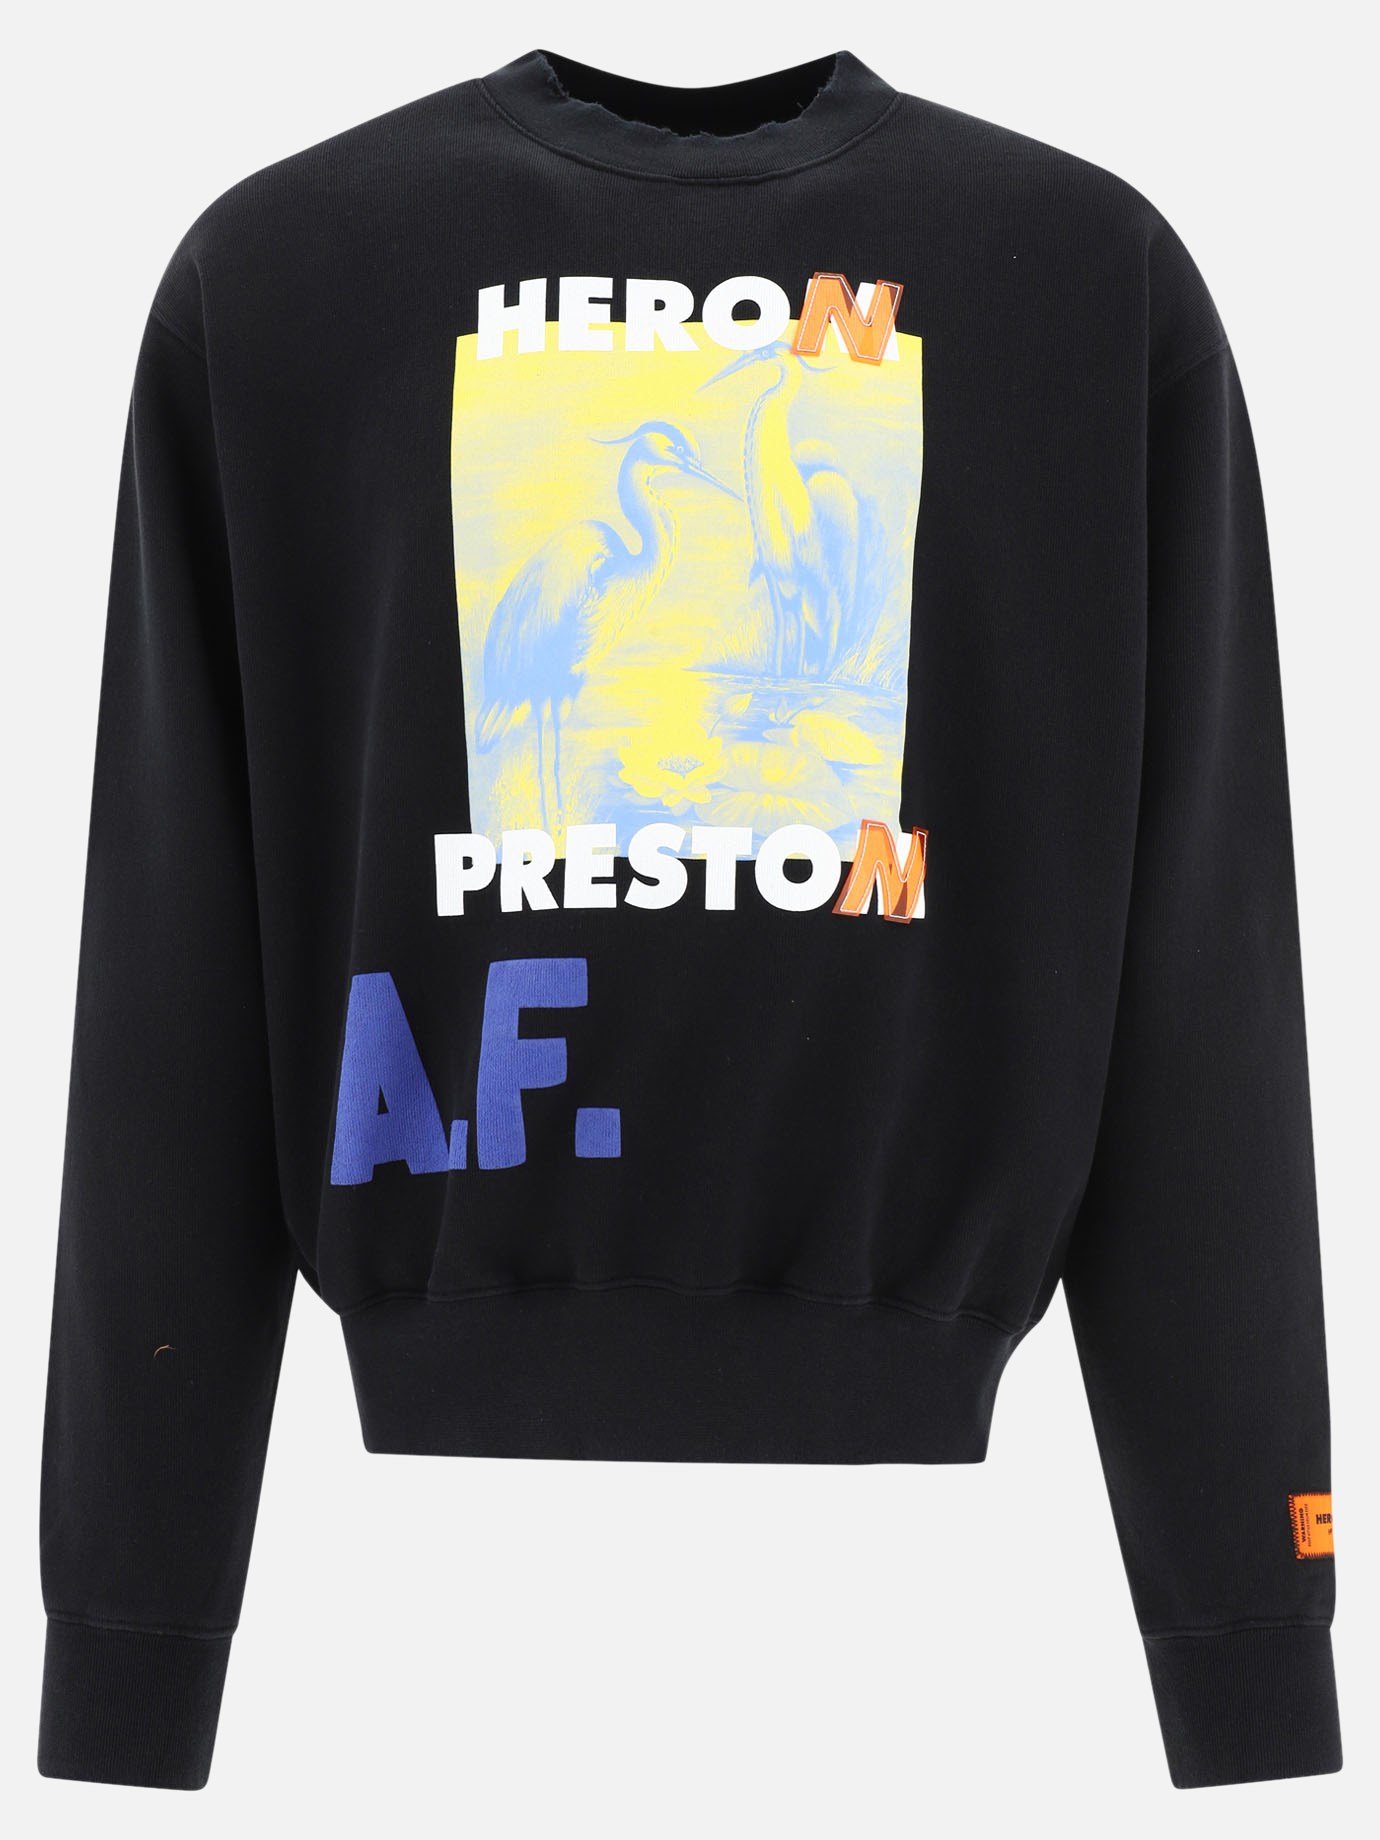  A.F. Authorize  sweatshirtby Heron Preston - 0